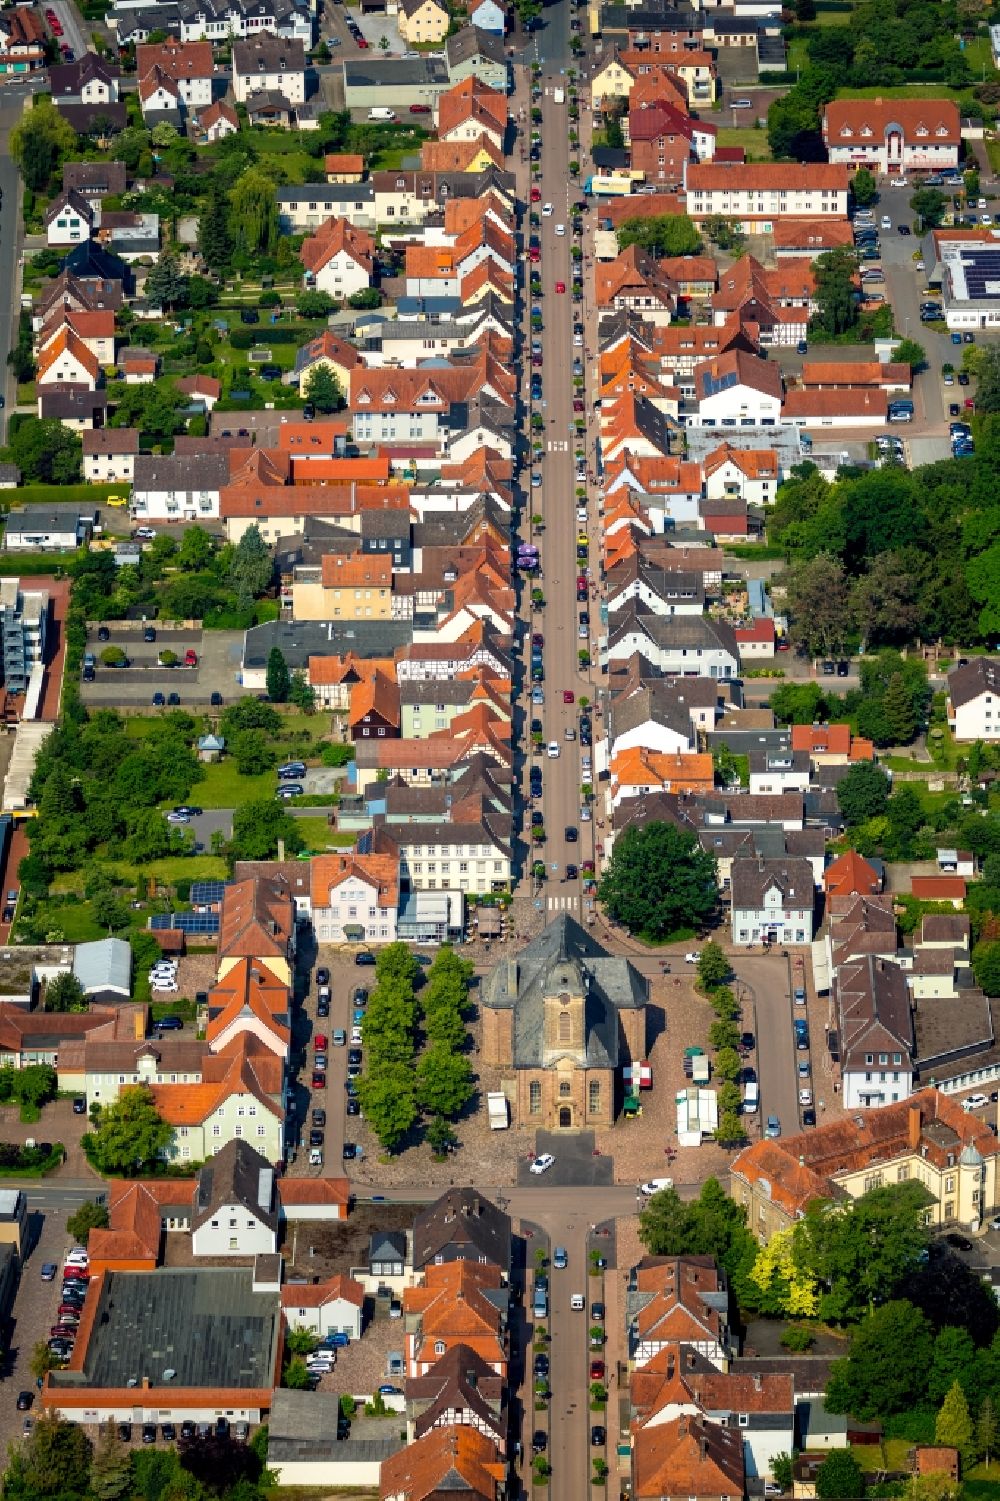 Luftbild Bad Arolsen - Straßenführung der bekannten Flaniermeile und Einkaufsstraße Schloßstraße in Bad Arolsen im Bundesland Hessen, Deutschland